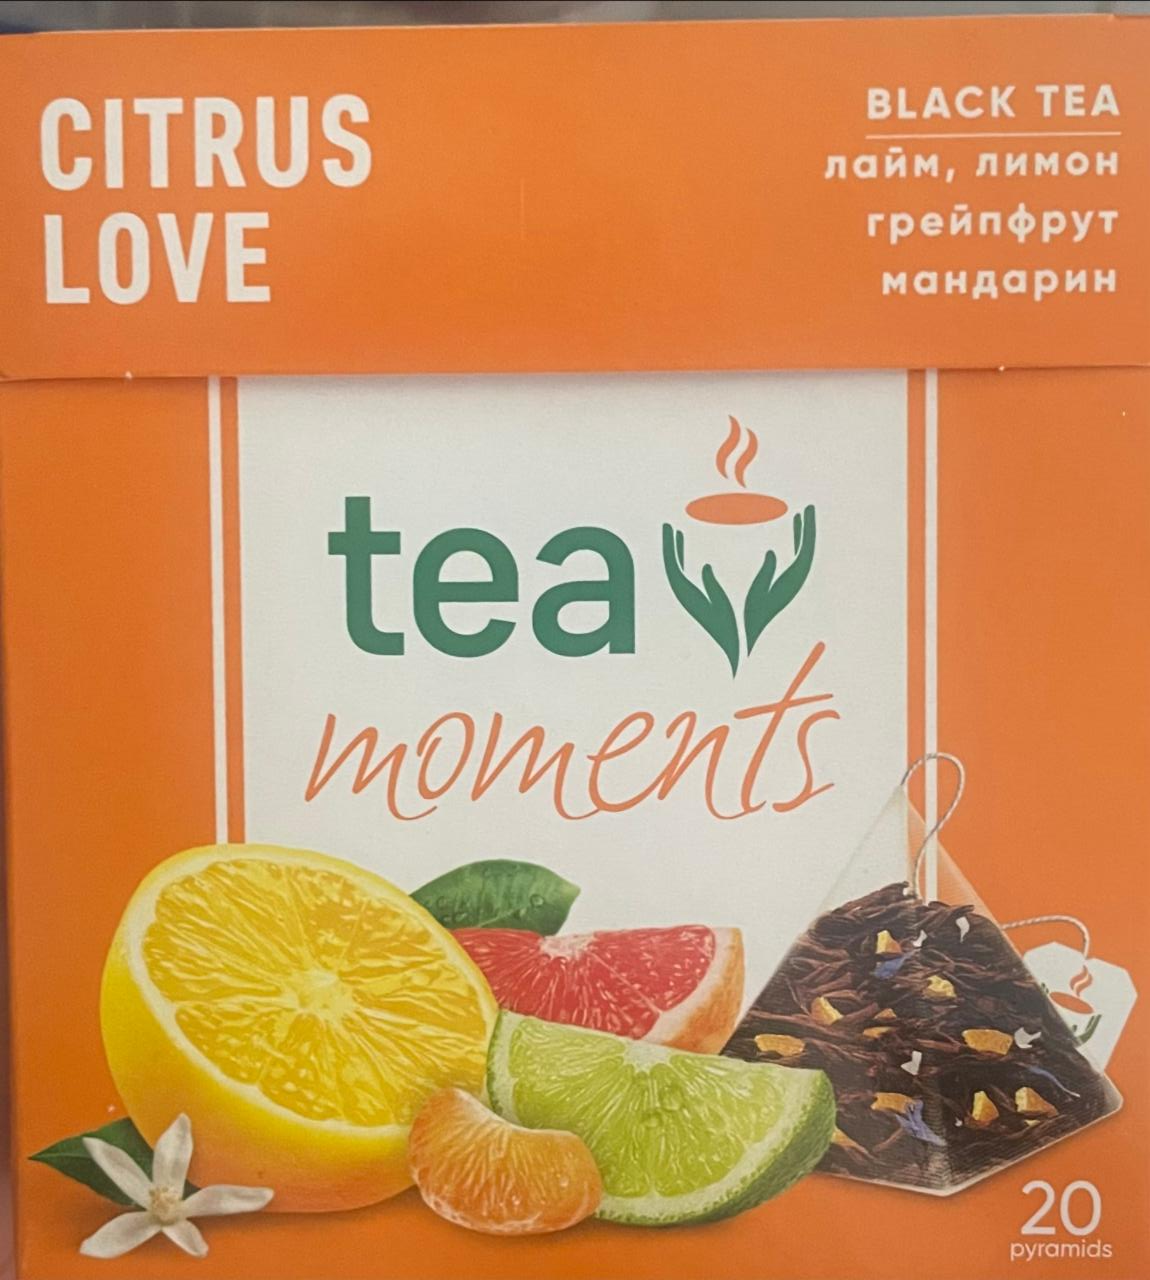 Фото - Чай цитрусовый черный лимон, грейпфрут, лайм, мандарин Black tea moments Citrus love